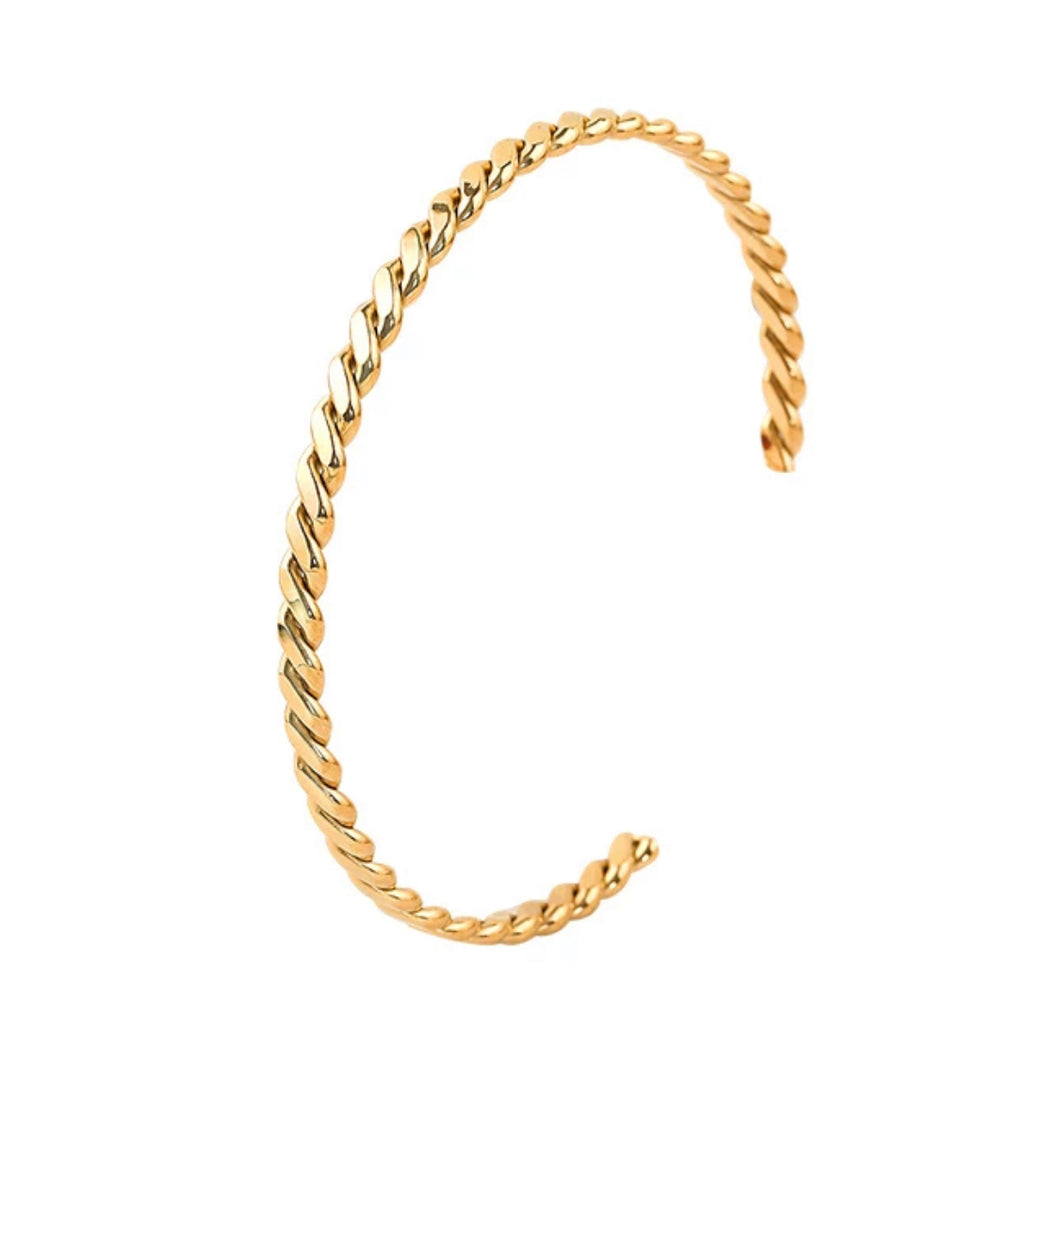 Gold twisted bracelet bangle 